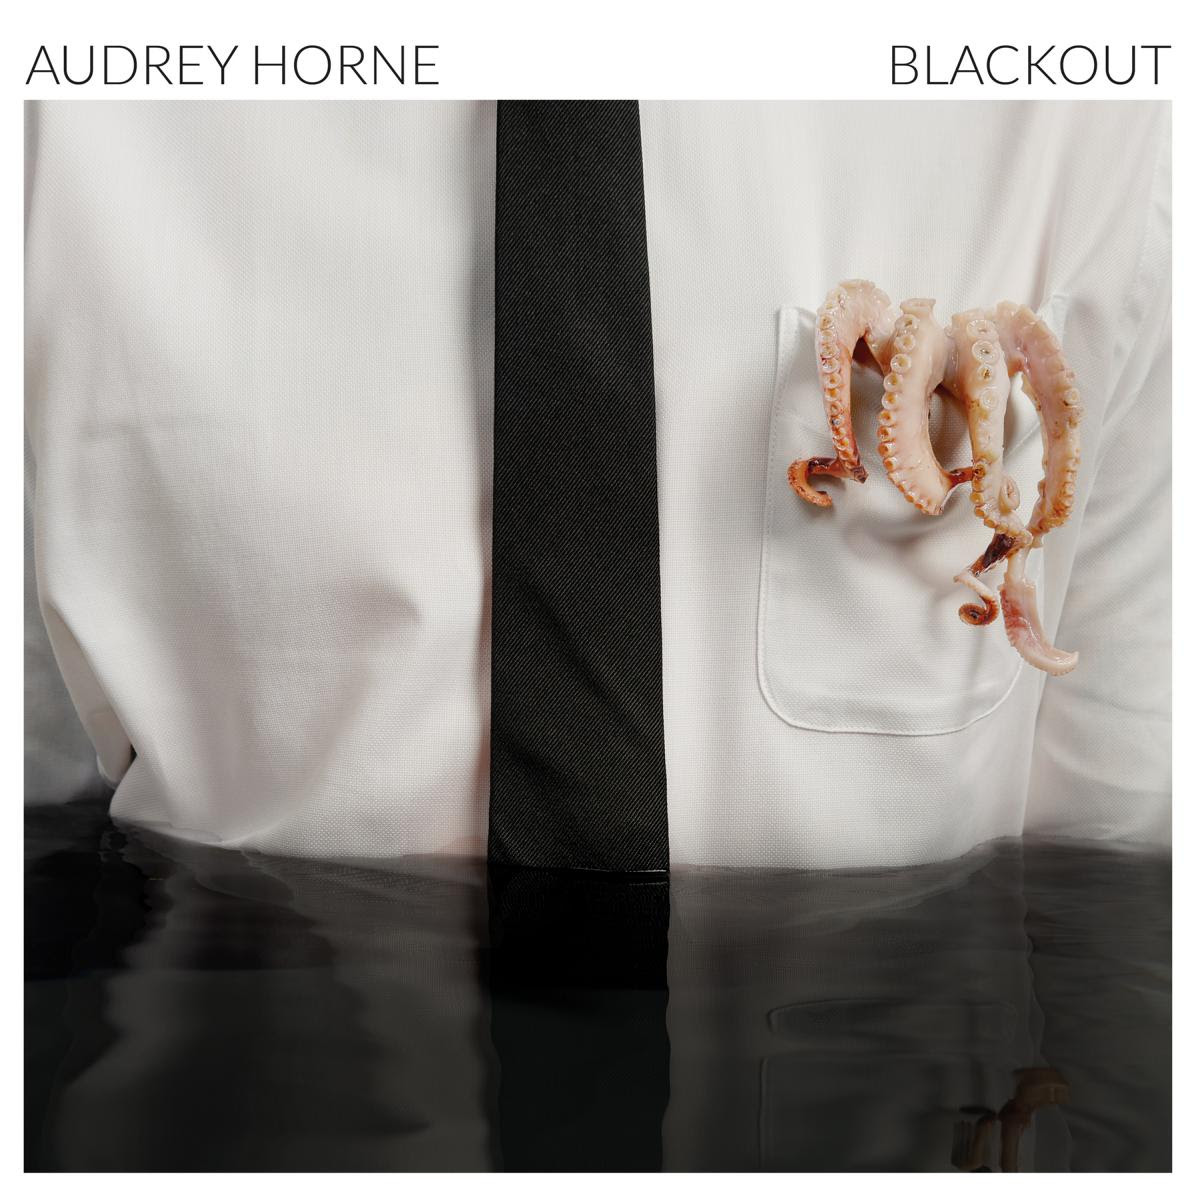 AUDREY HORNE nuevo trabajo “Blackout” para enero 2018